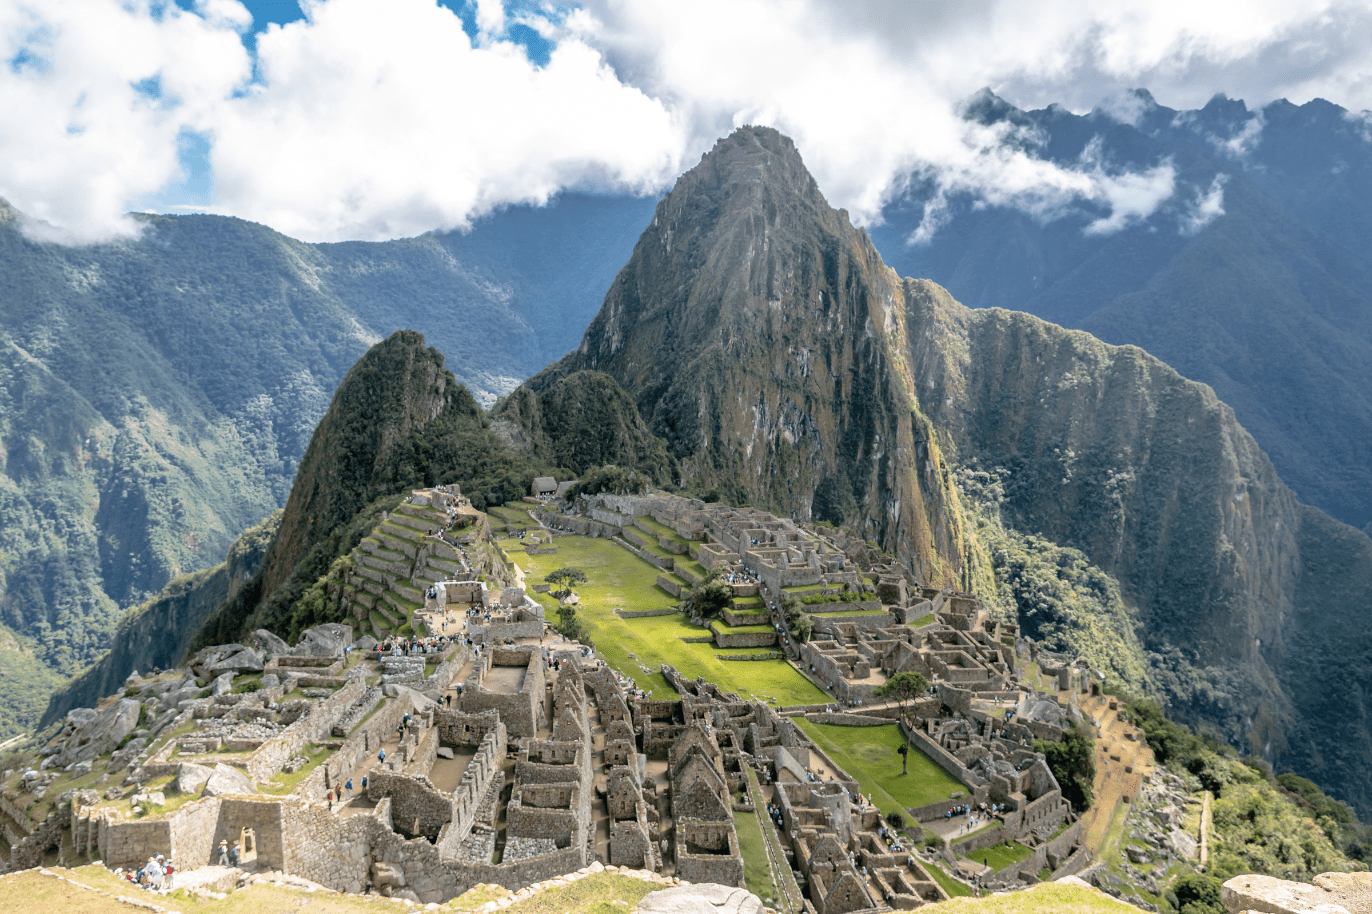 O que levar em uma viagem para Machu Picchu?